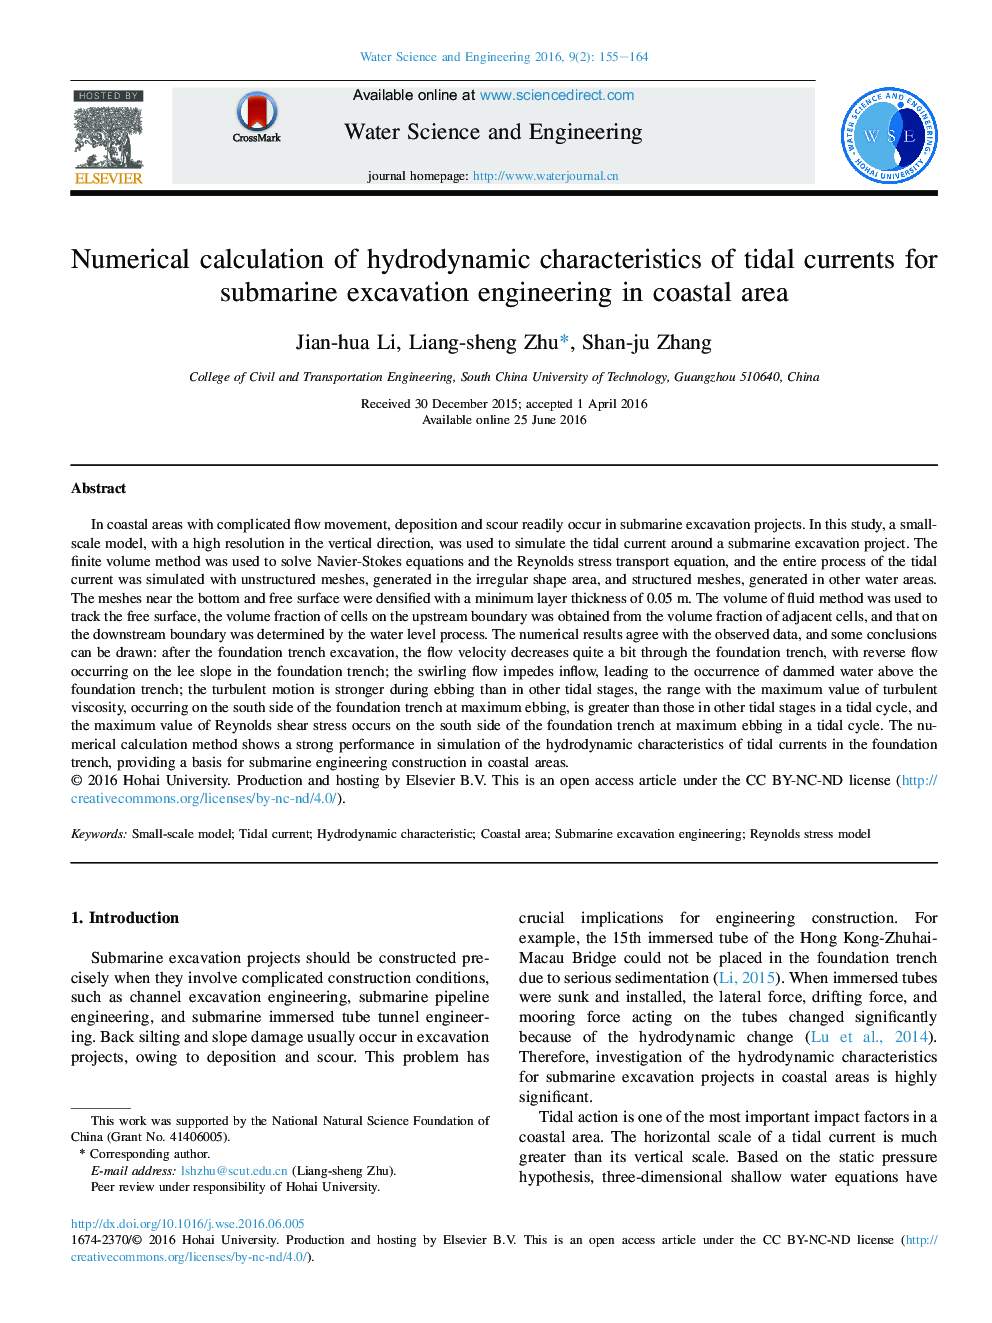 محاسبه عددی ویژگی های هیدرودینامیکی جریانهای جزر و مدی برای مهندسی حفاری زیردریایی در منطقه ساحلی 